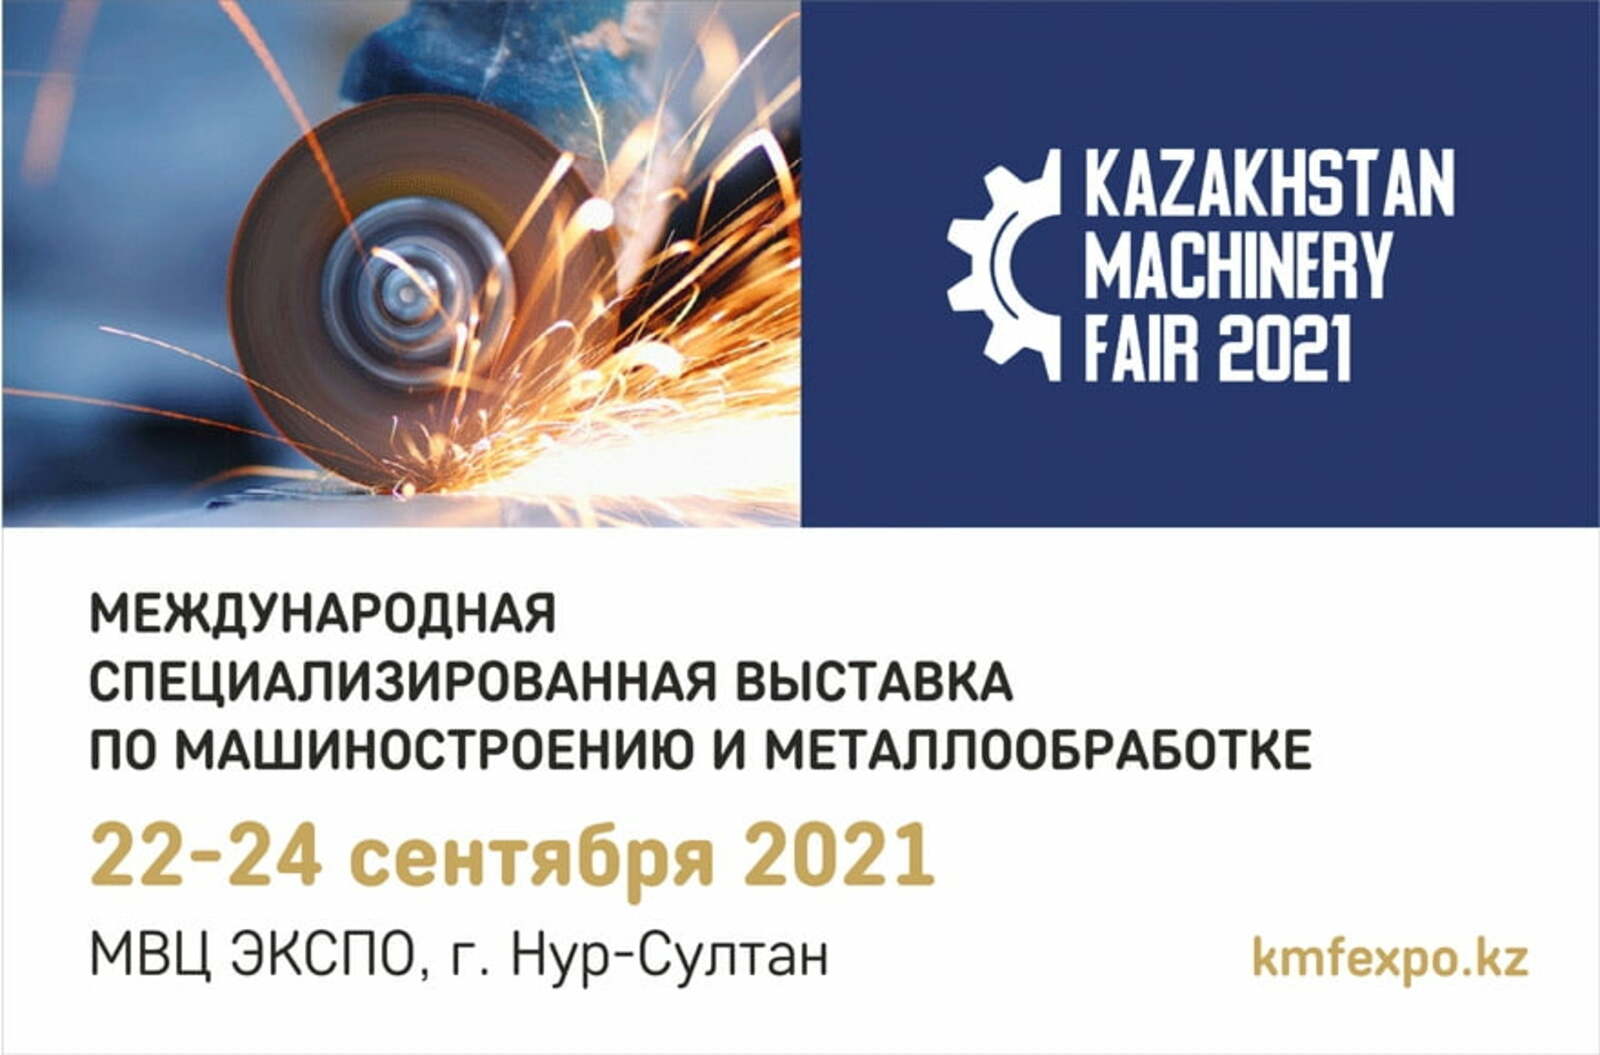 Башкирские предприятия примут участие в международной выставке по машиностроению и металлообработке Kazakhstan Machinery Fair 2021